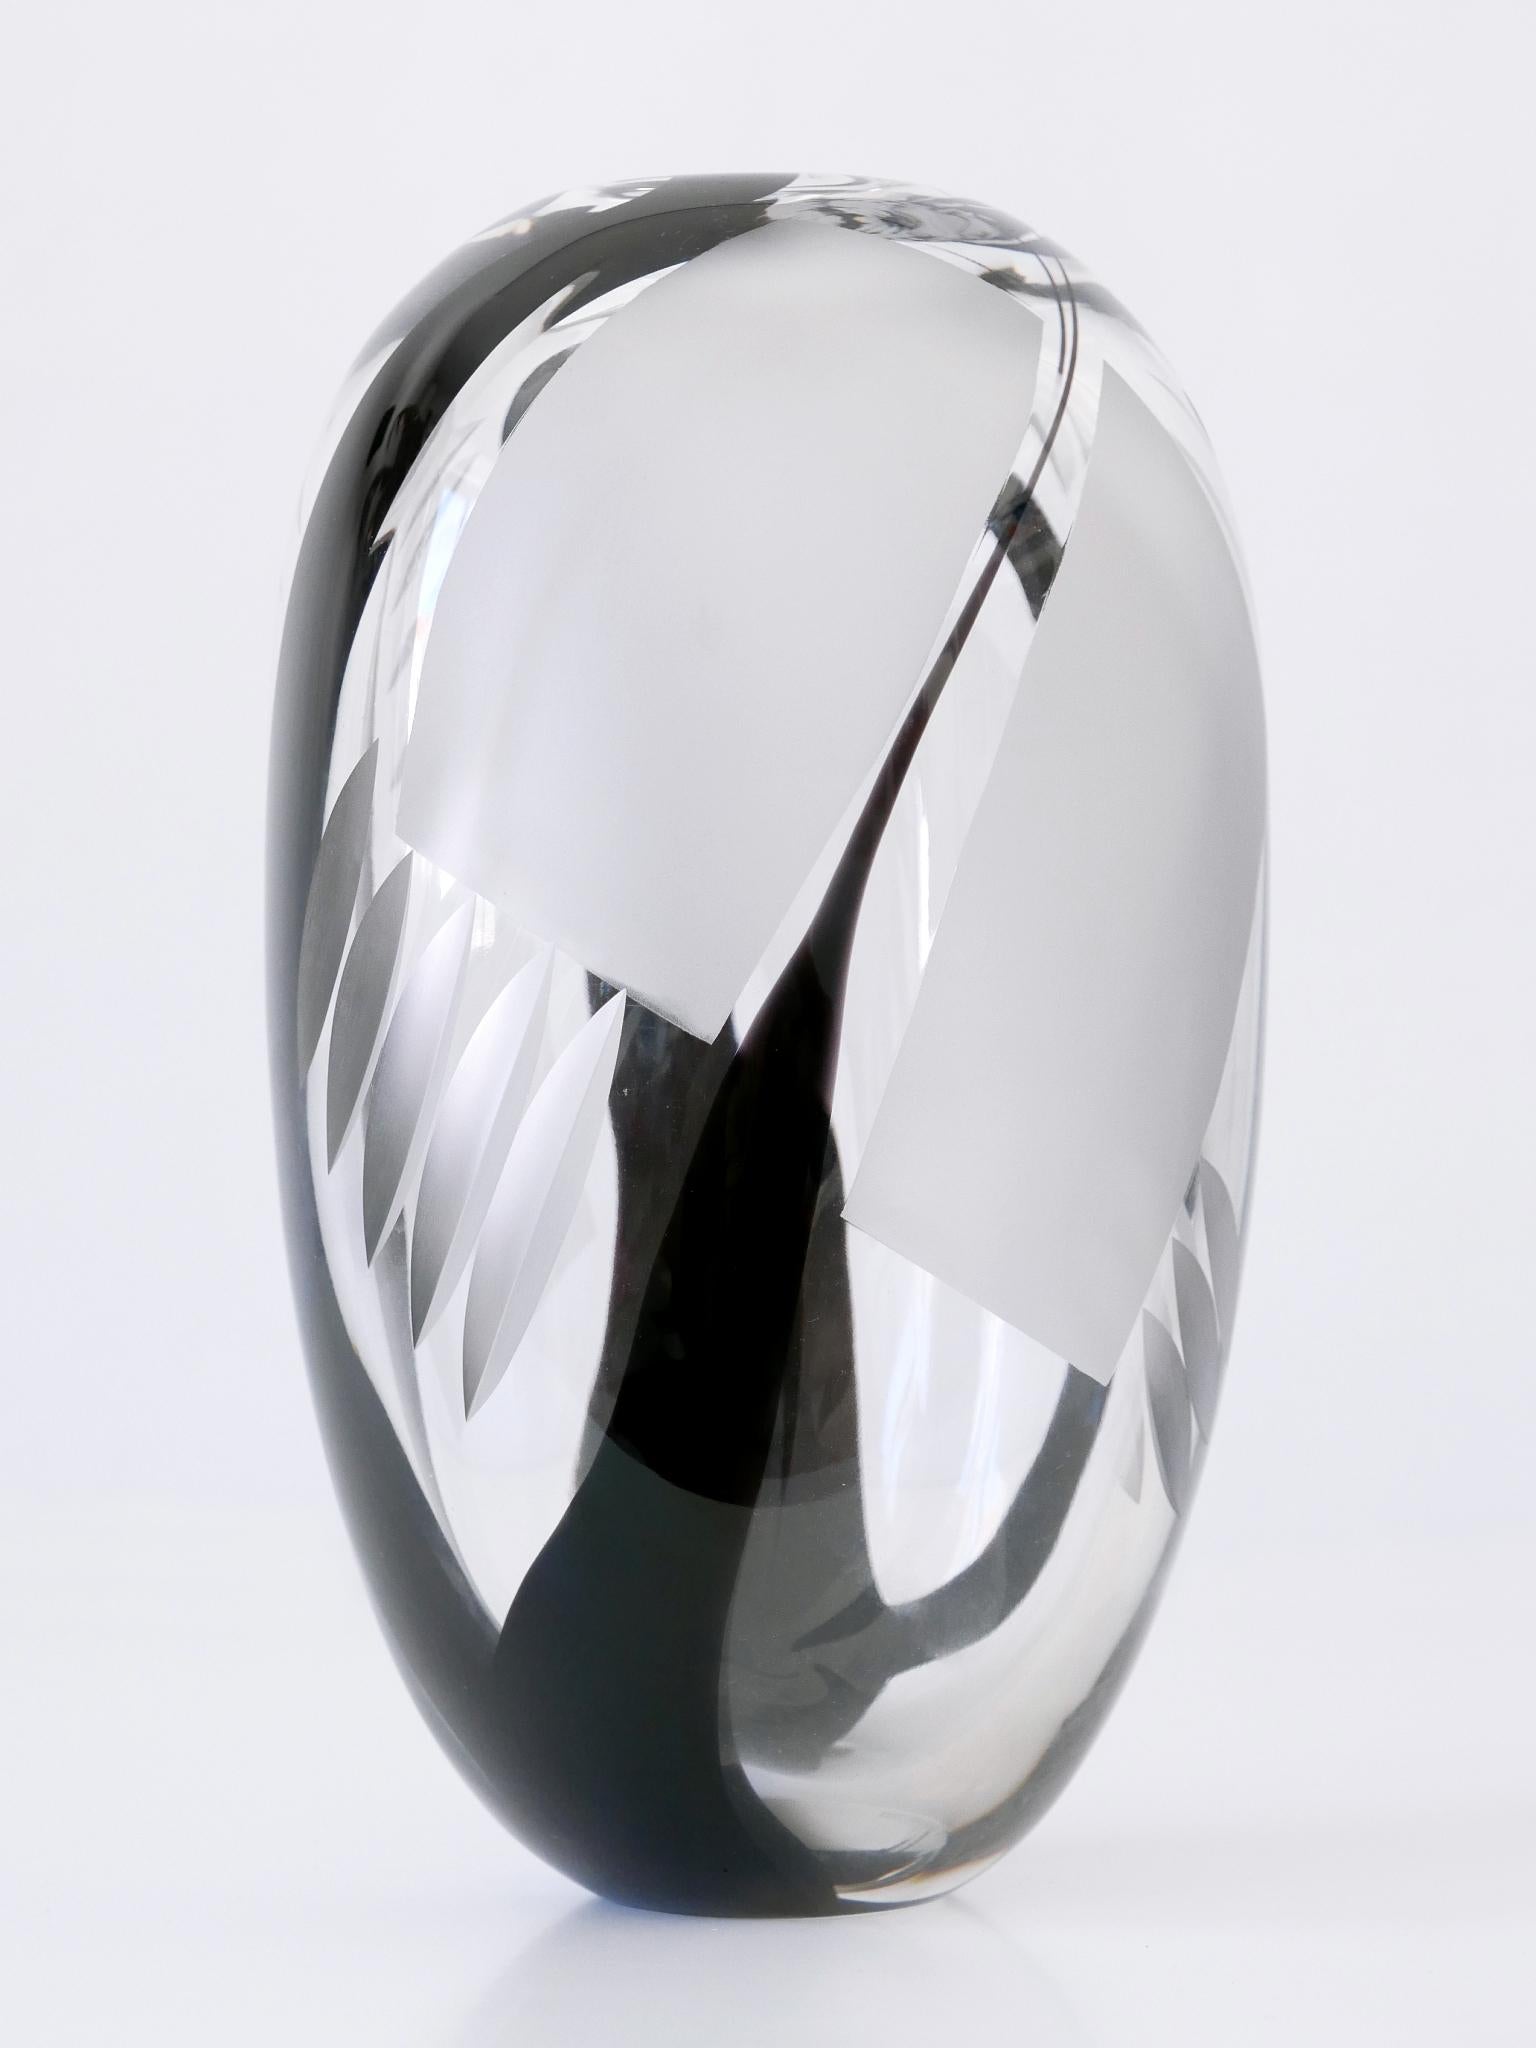 Unique Art Glass Vase by Anna Ehrer for Kosta Boda Sweden 1992 Signed For Sale 10